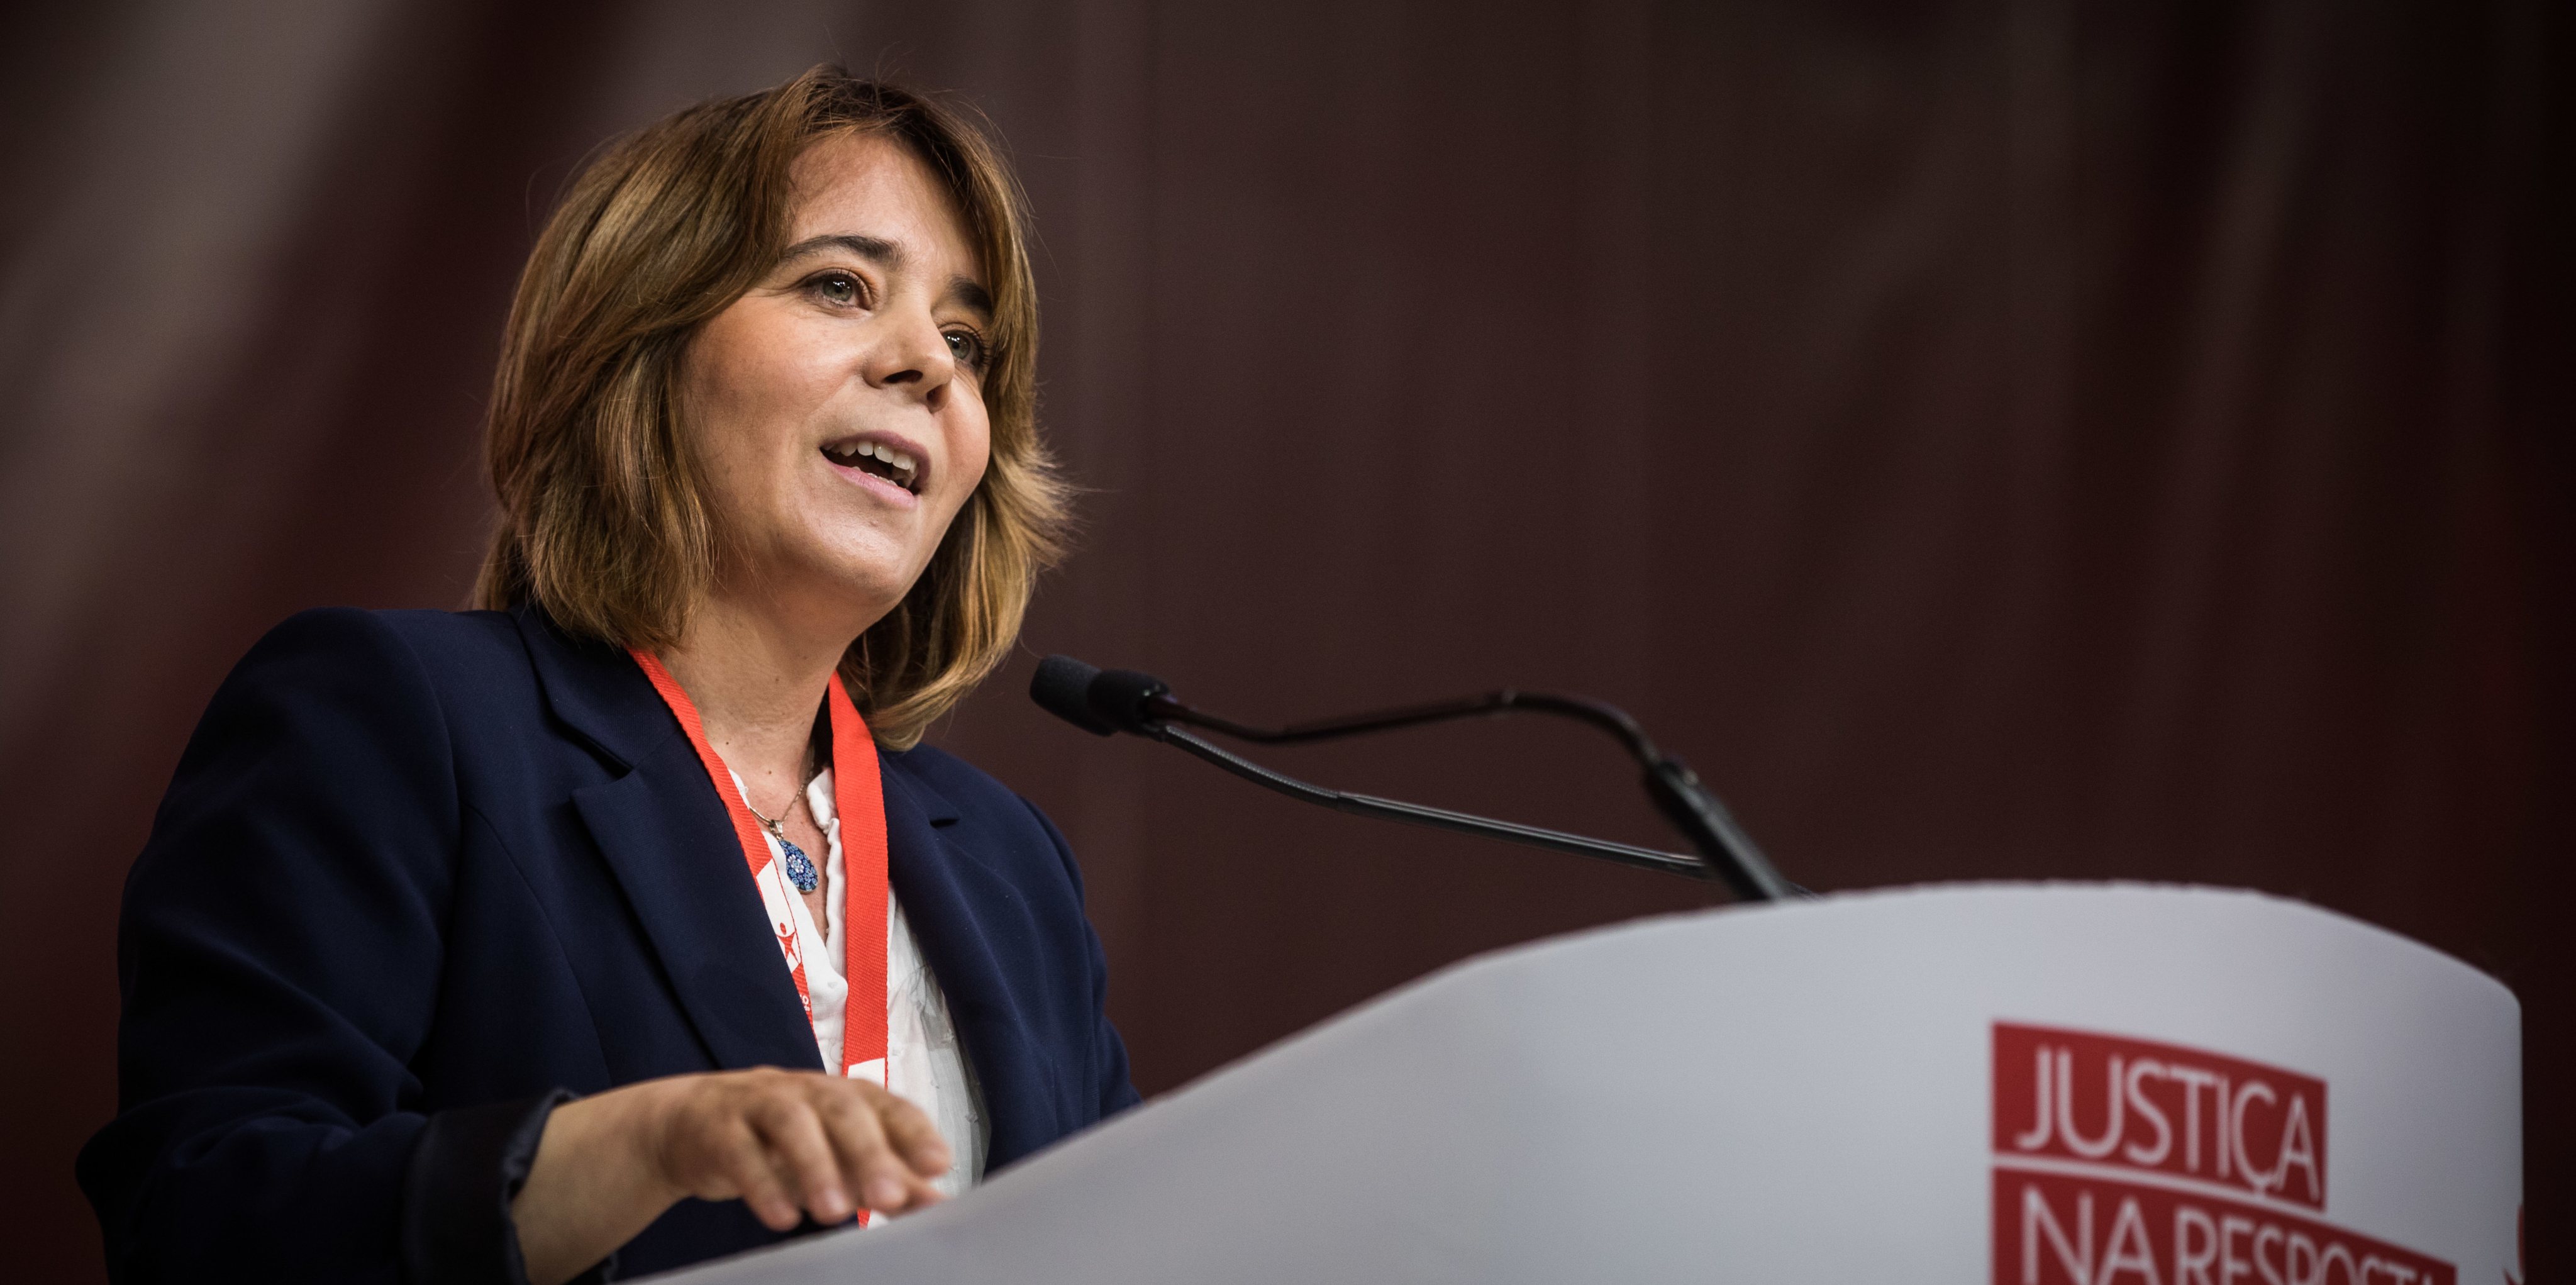 Catarina Martins abriu a convenção com críticas ao PS, mas evitando transmitir uma imagem de intransigência